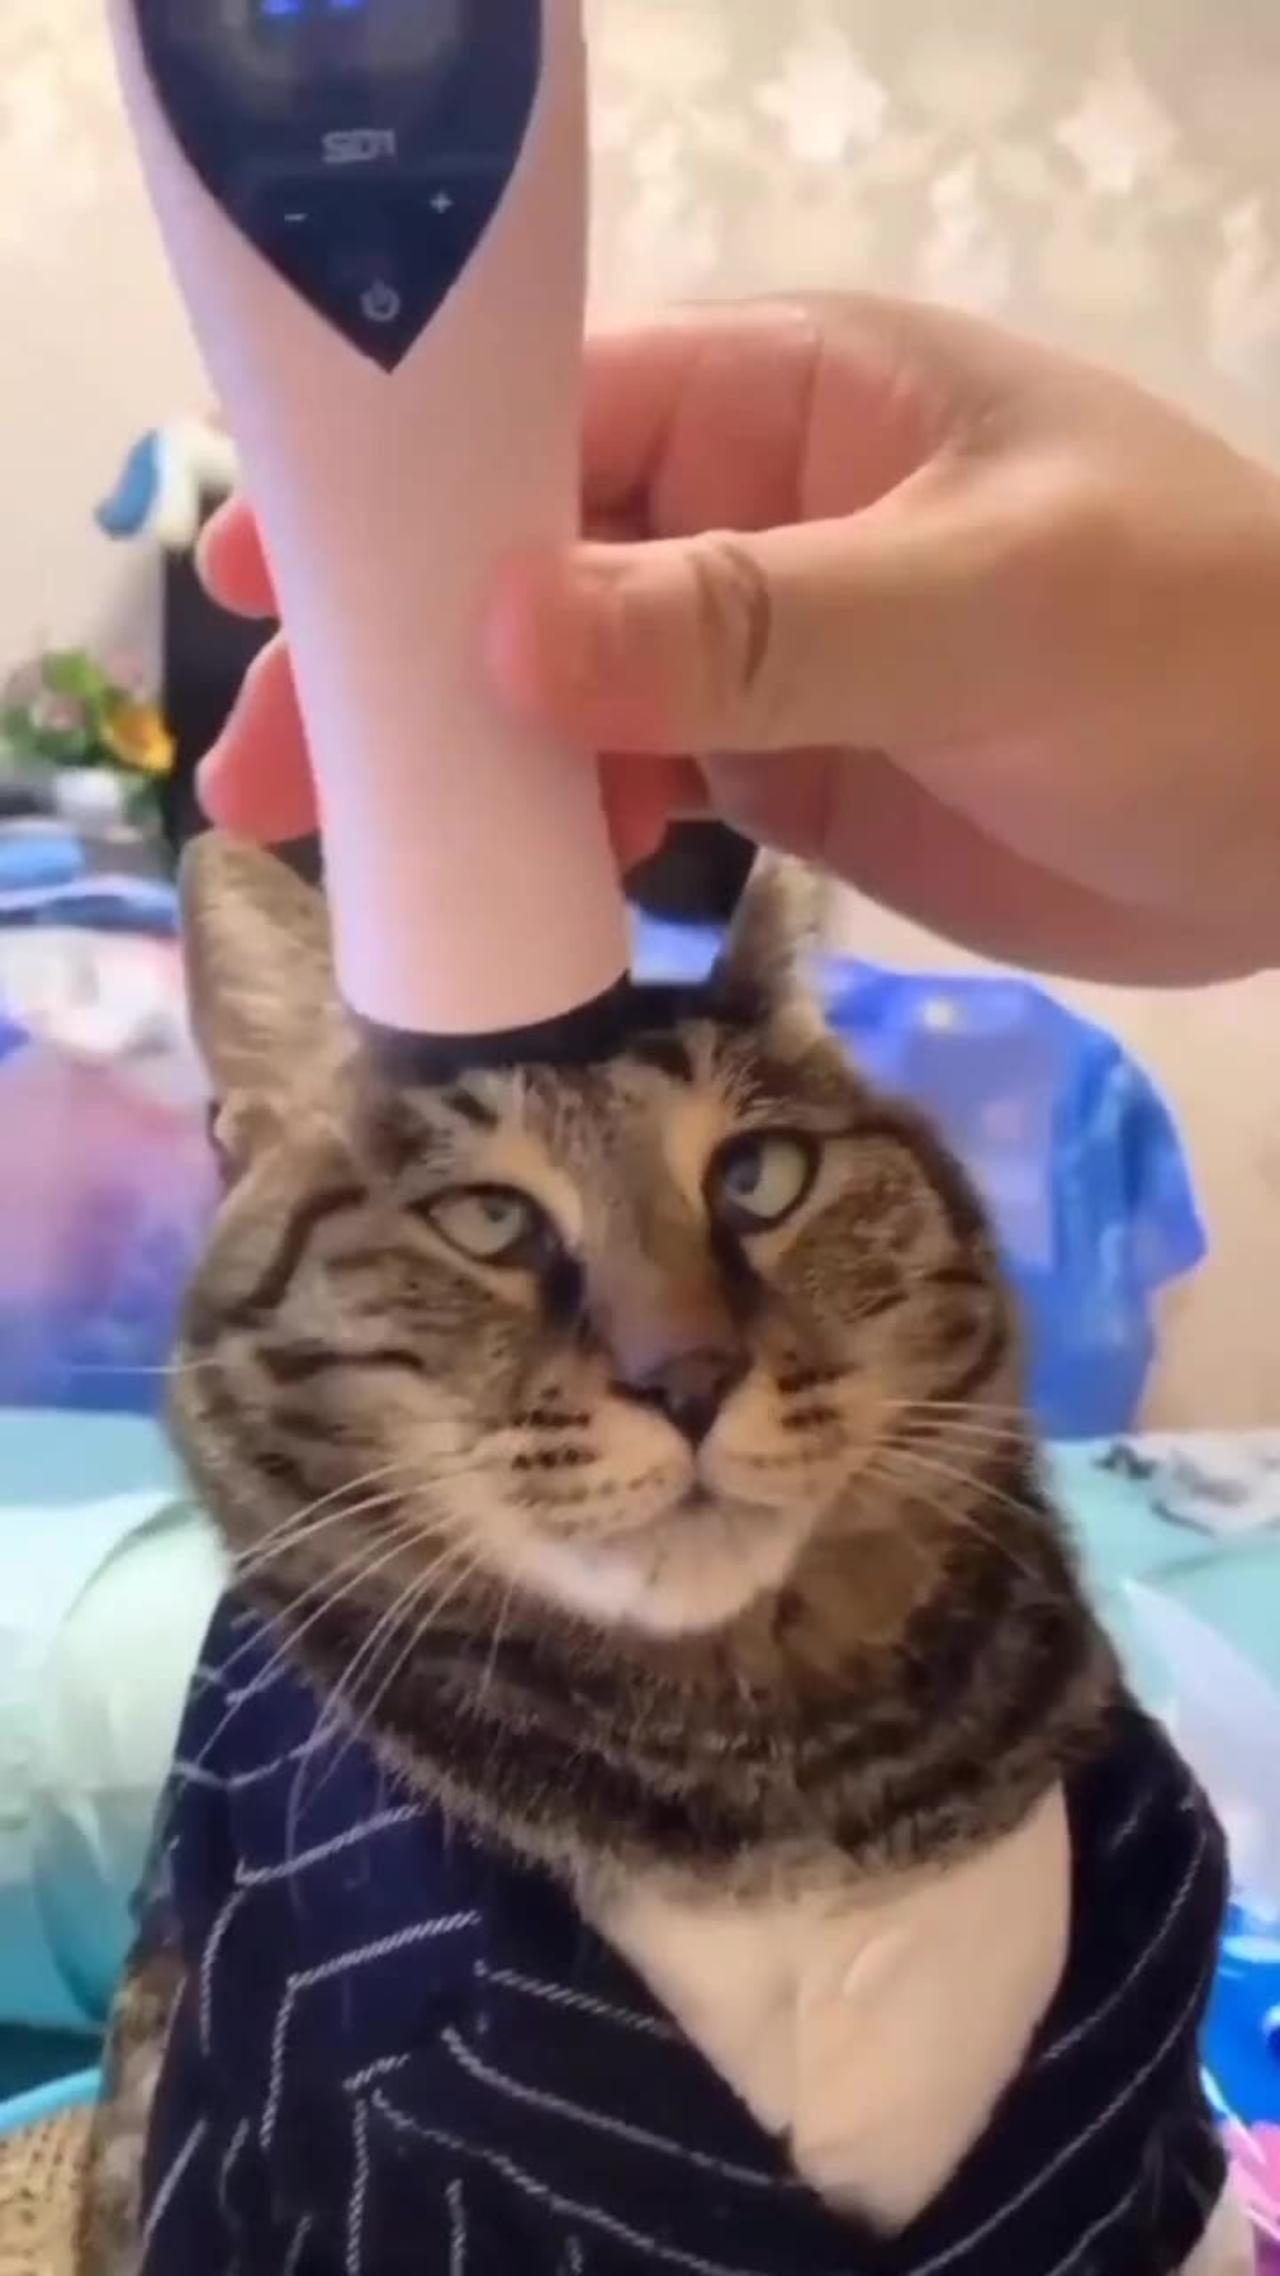 Cat getting a head massage! #cat #cats #cutepet #catlover #pet #love #cute #kitten #kitty #meow